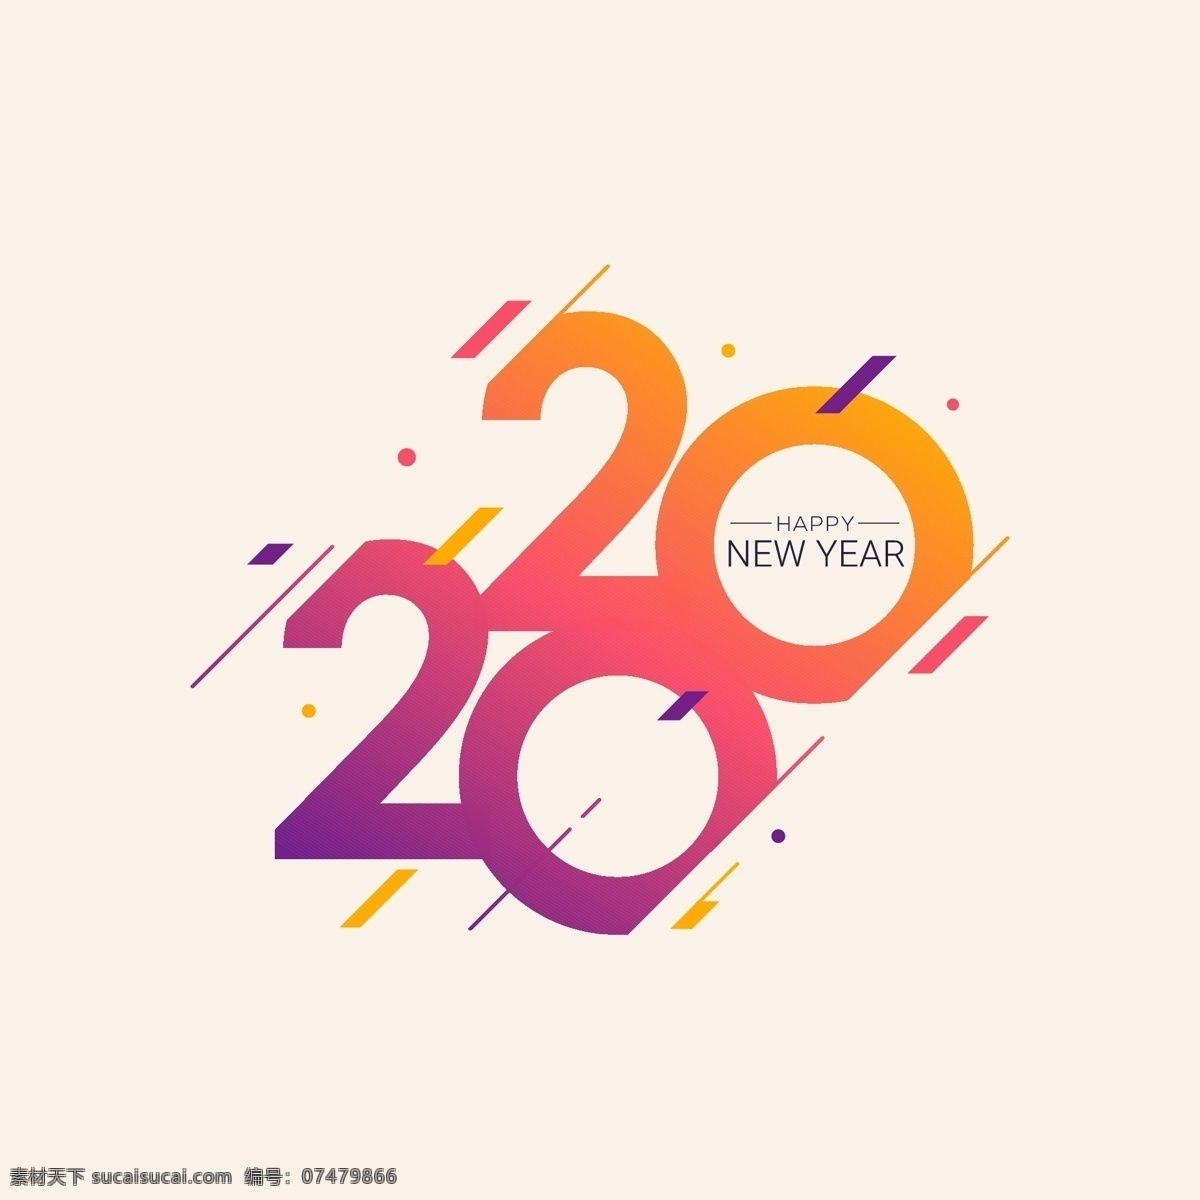 2020 新年 快乐 字体 新年快乐 happy new year